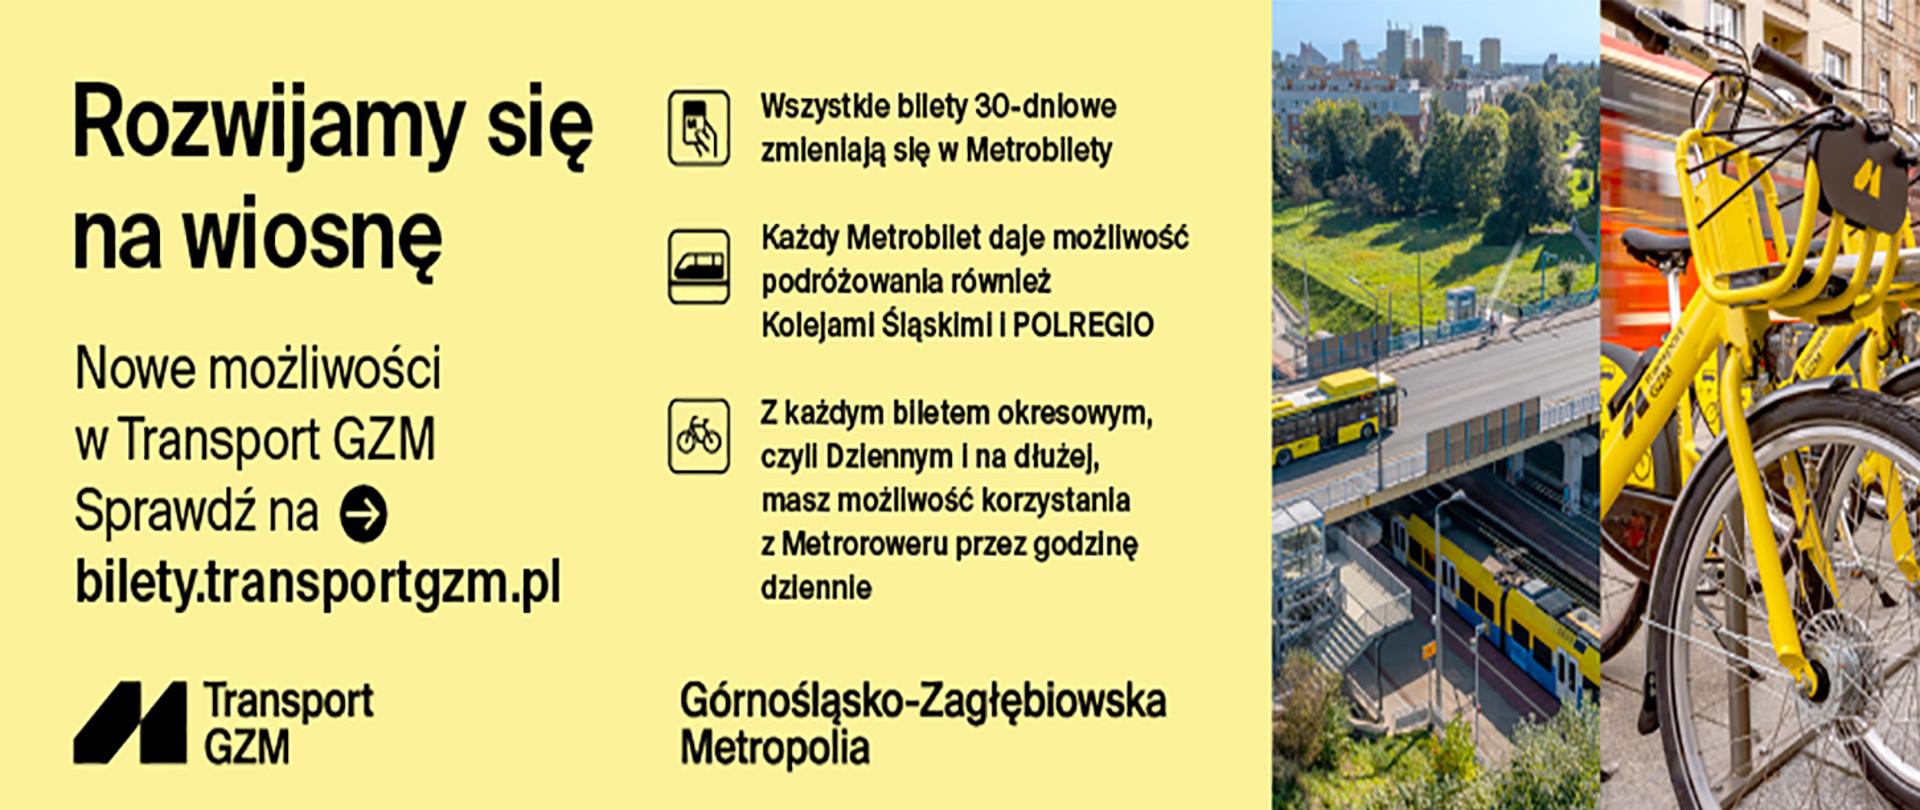 Informacja promocyjna GZM na żółtym tle. Obok zdjęcia pociągu i autobusu poruszających się po trasach oraz żółte rowery